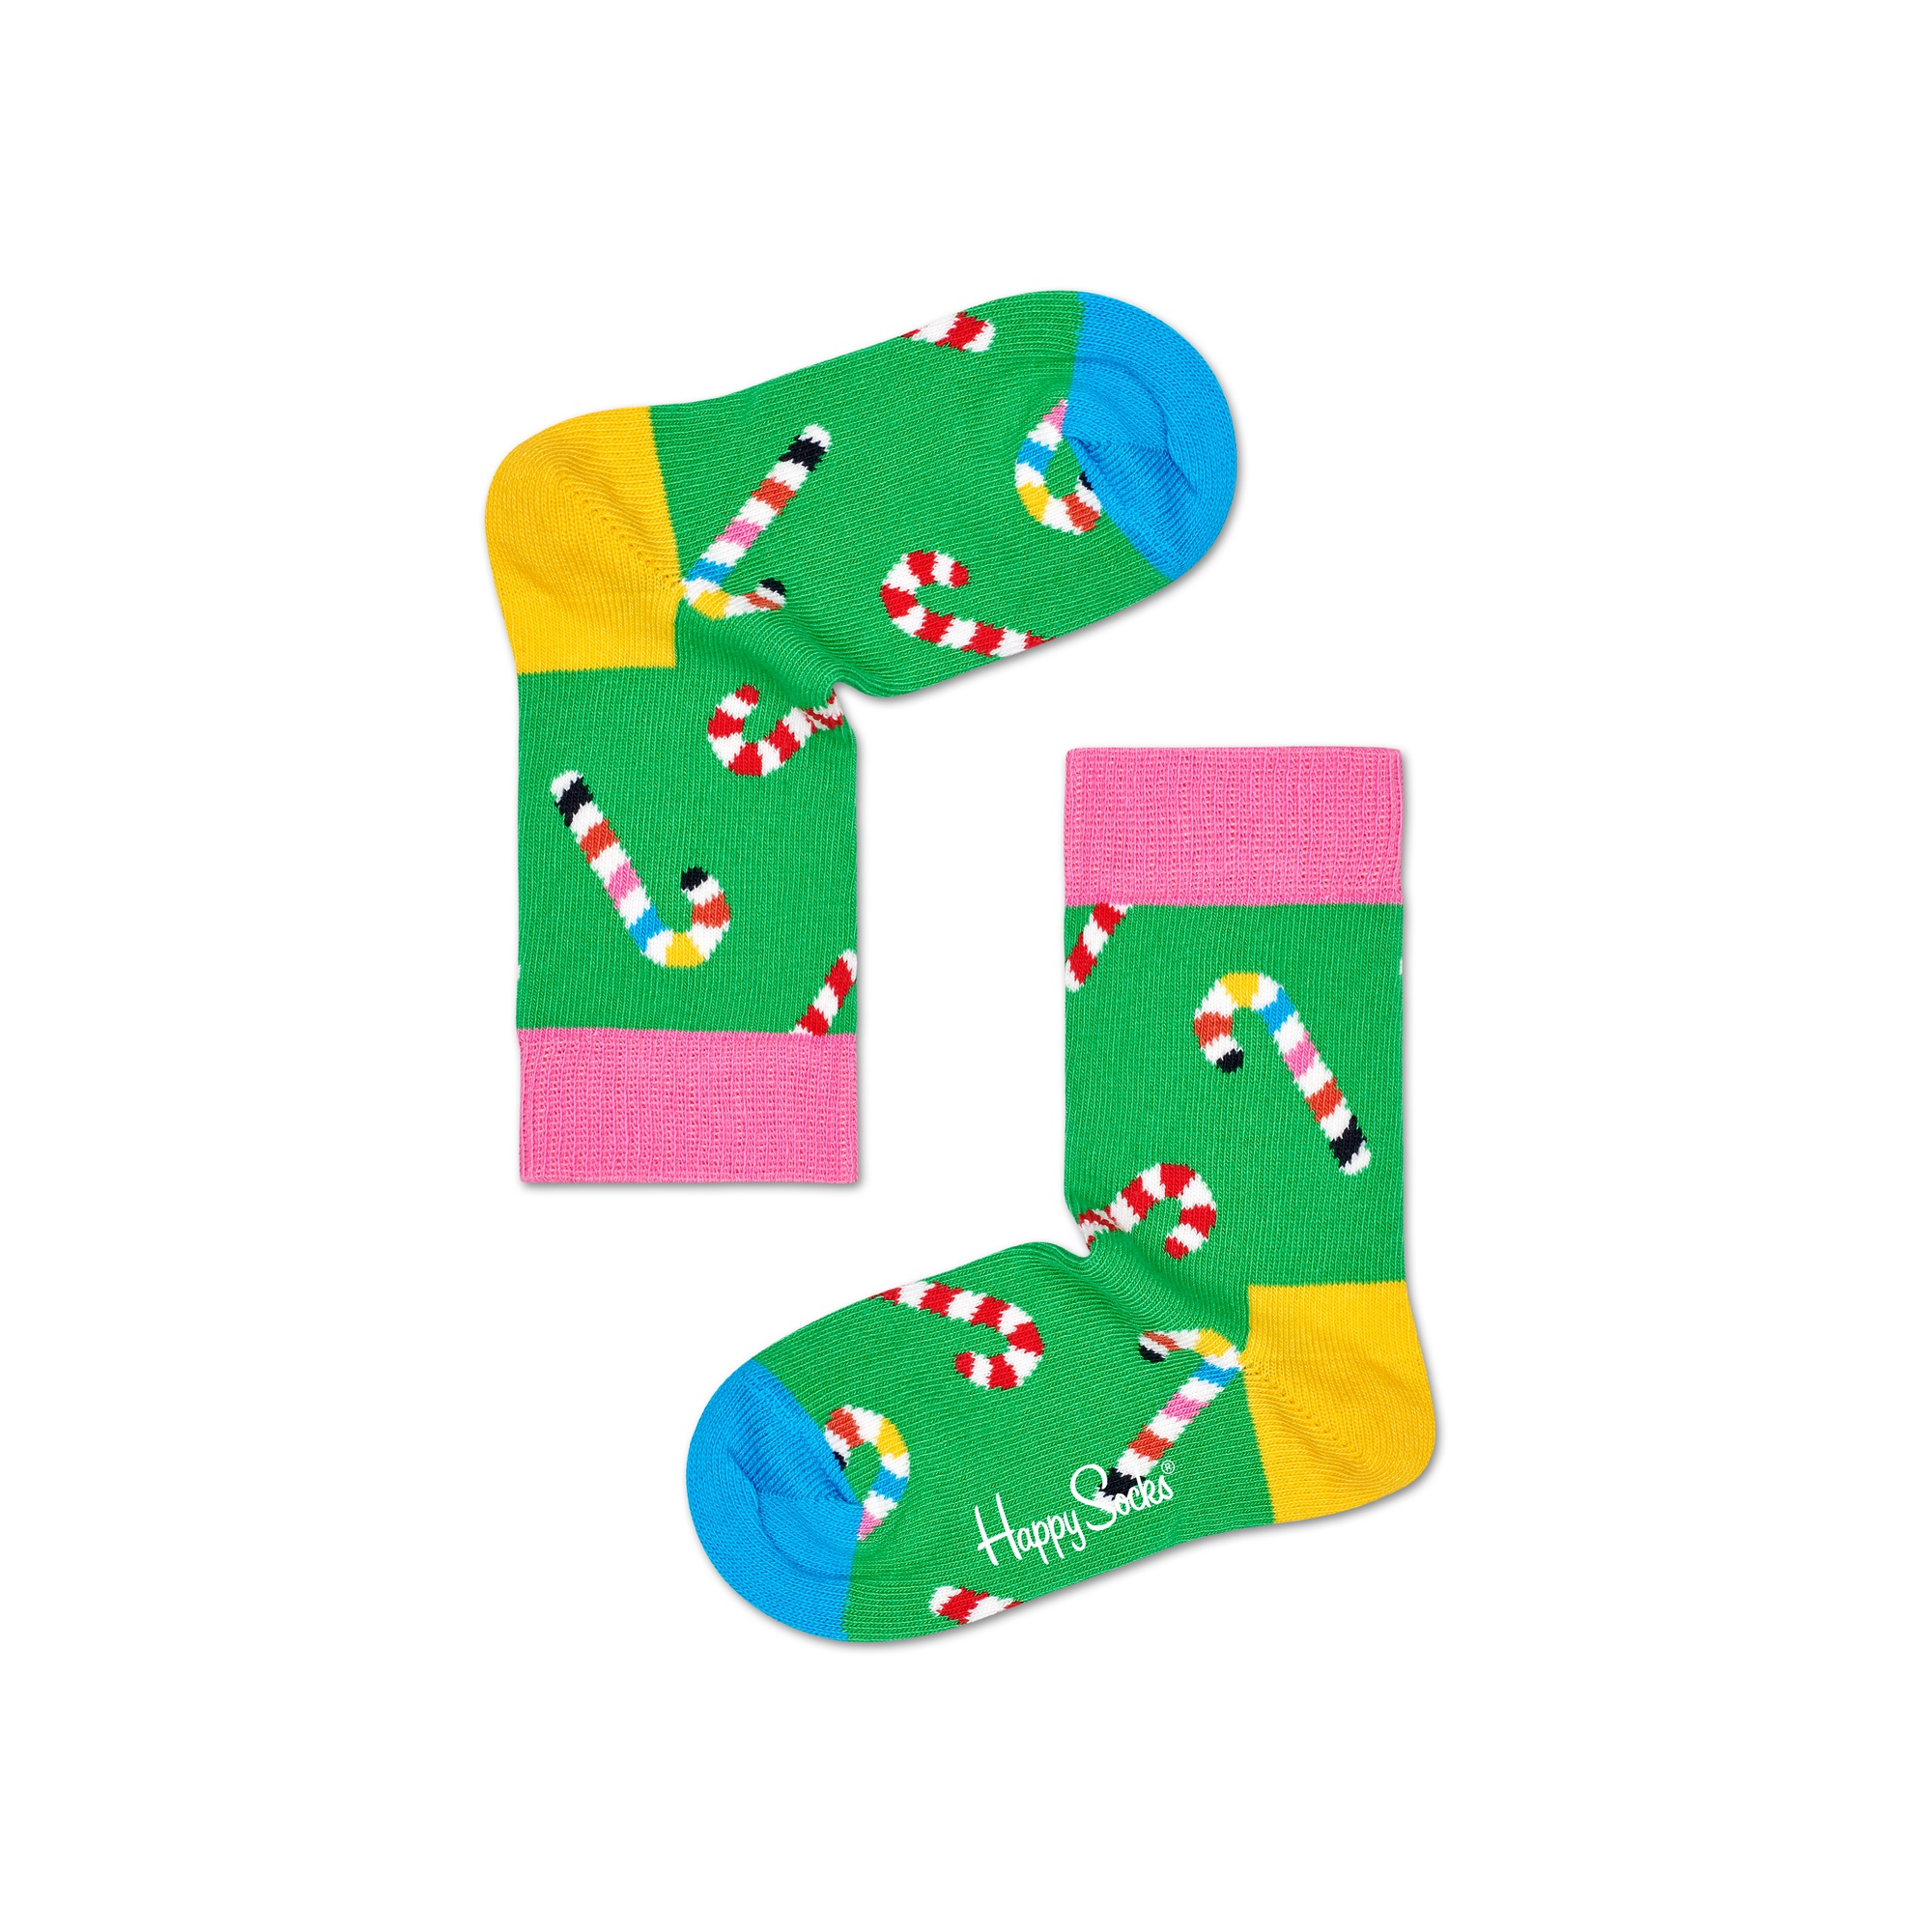 Par De Calcetines Kids Candy Cane - multicolor - 